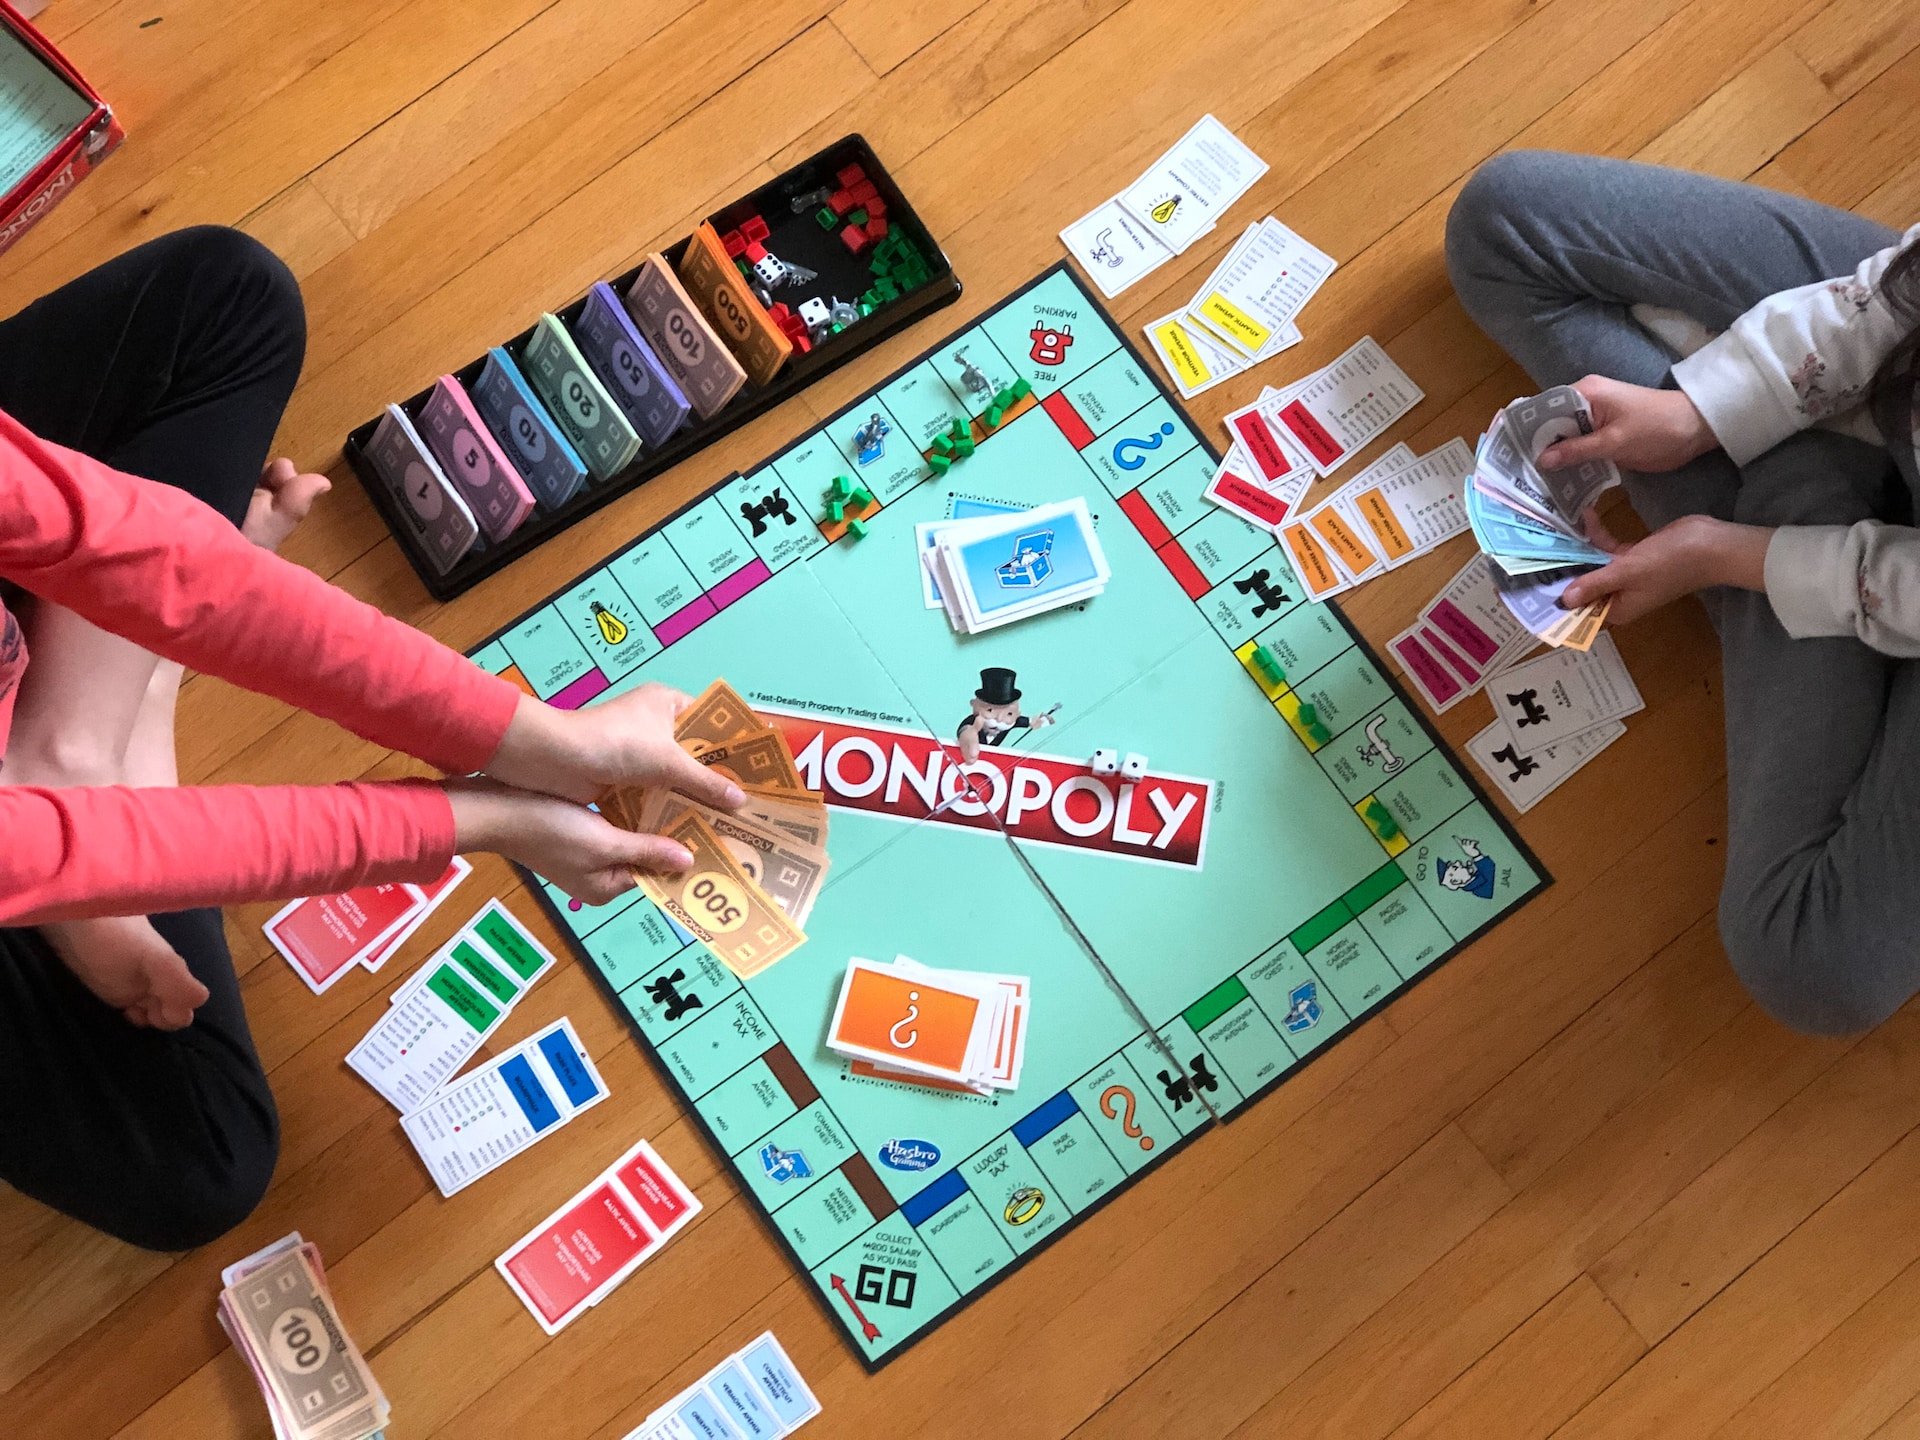 Foto: Aufsicht auf ein aufgebautes Monopoly Spielbrett mit Spielkarten, Spielsteinen und zwei Spielern.